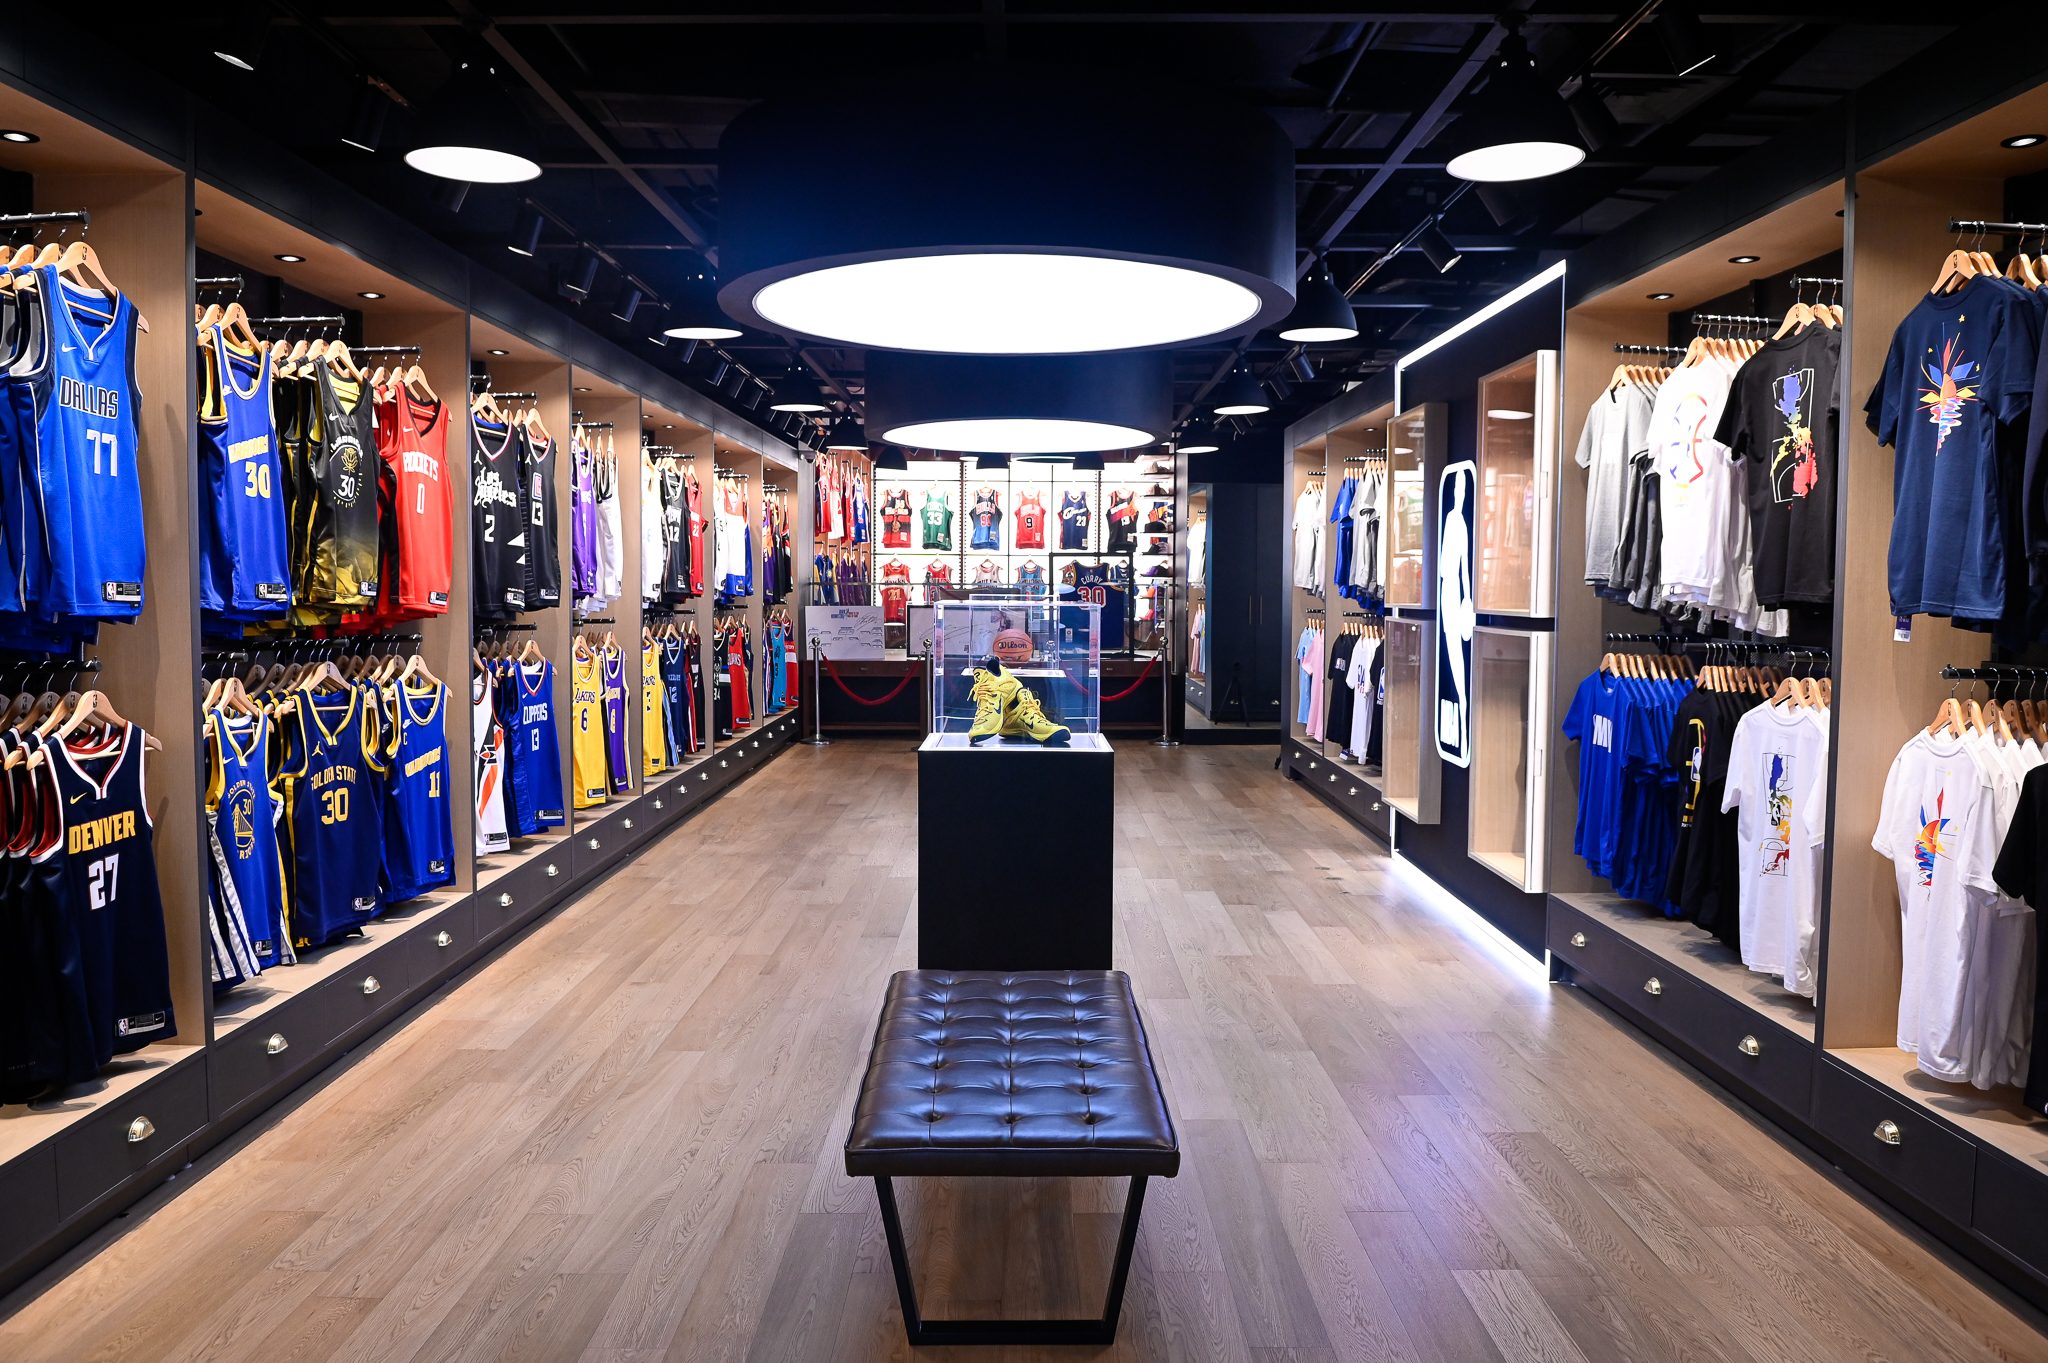 Third Manila NBA Store opens - Inside Retail Asia